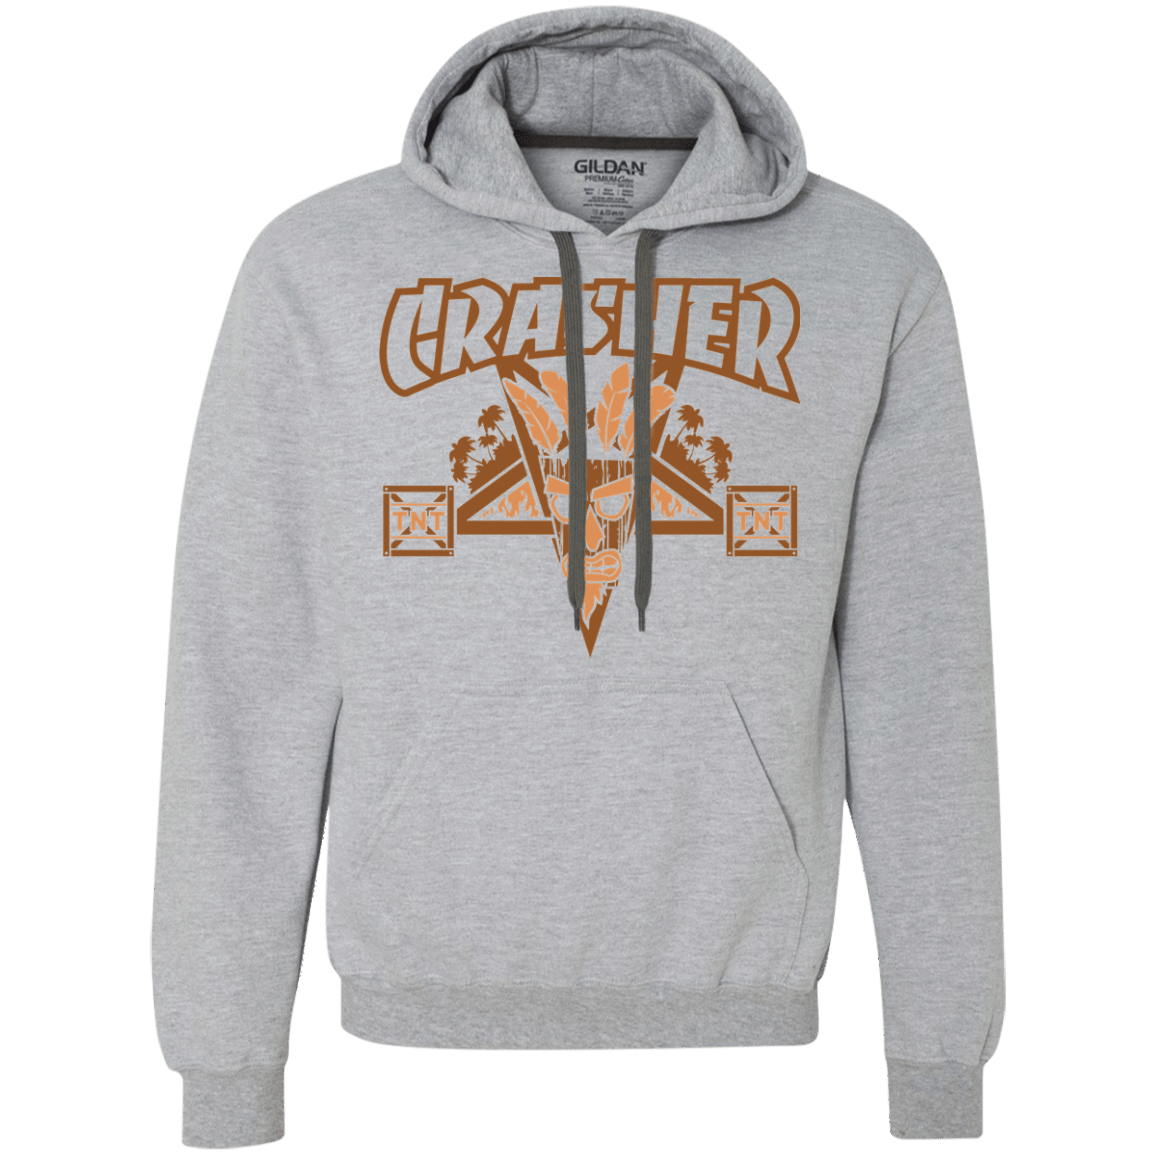 Sweatshirts Sport Grey / S CRASHER Premium Fleece Hoodie